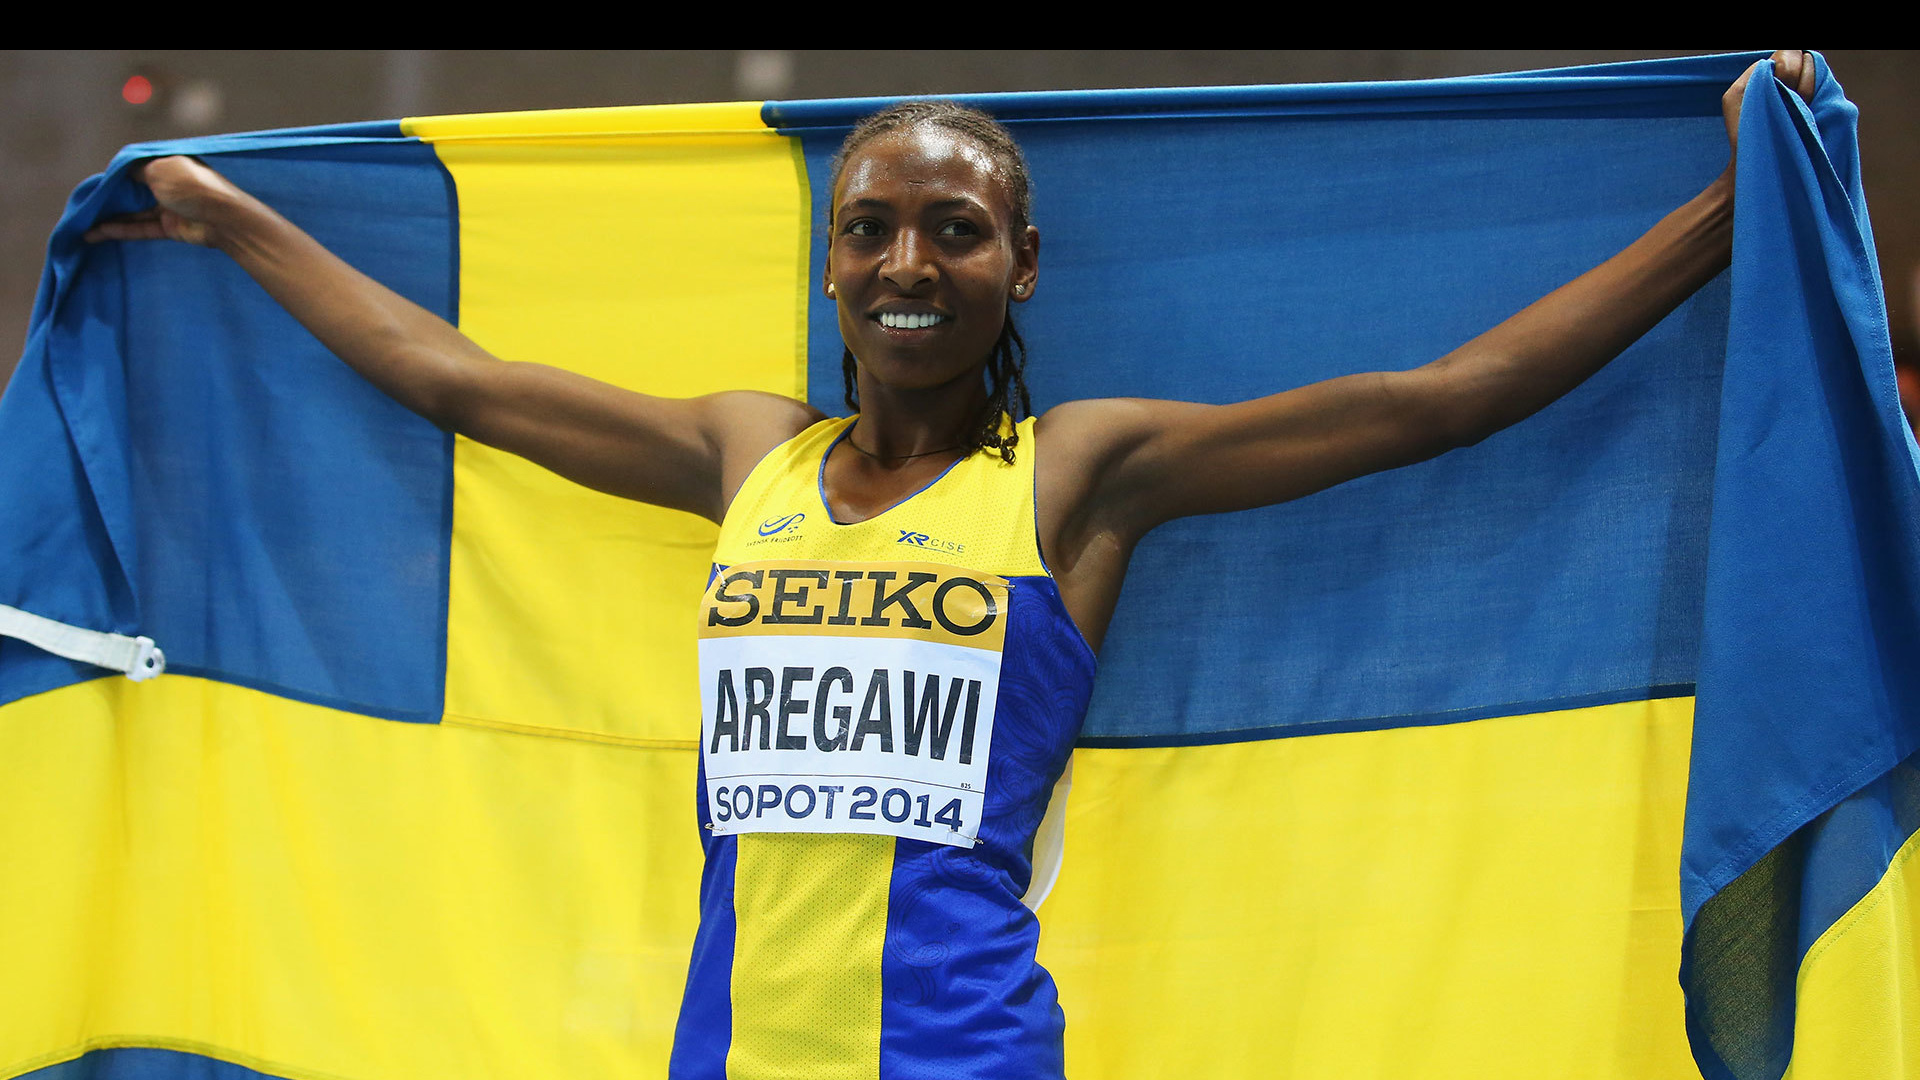 La atleta de 26 años Abeba Aregawi, podría asistir a los Juegos Olímpicos luego de que no se demostrará su consumo de meldonium